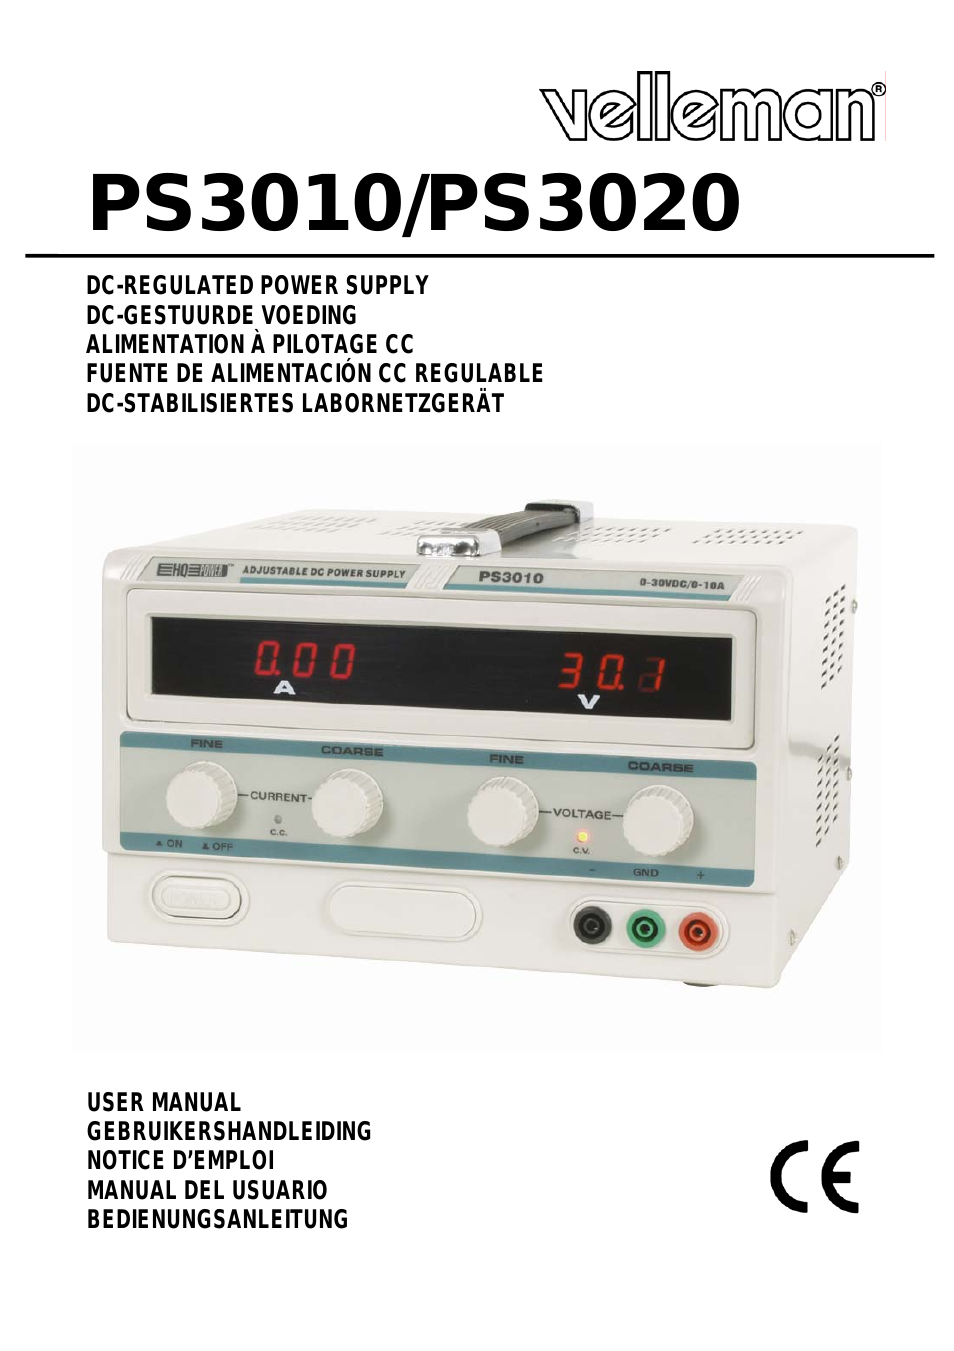 PS3020